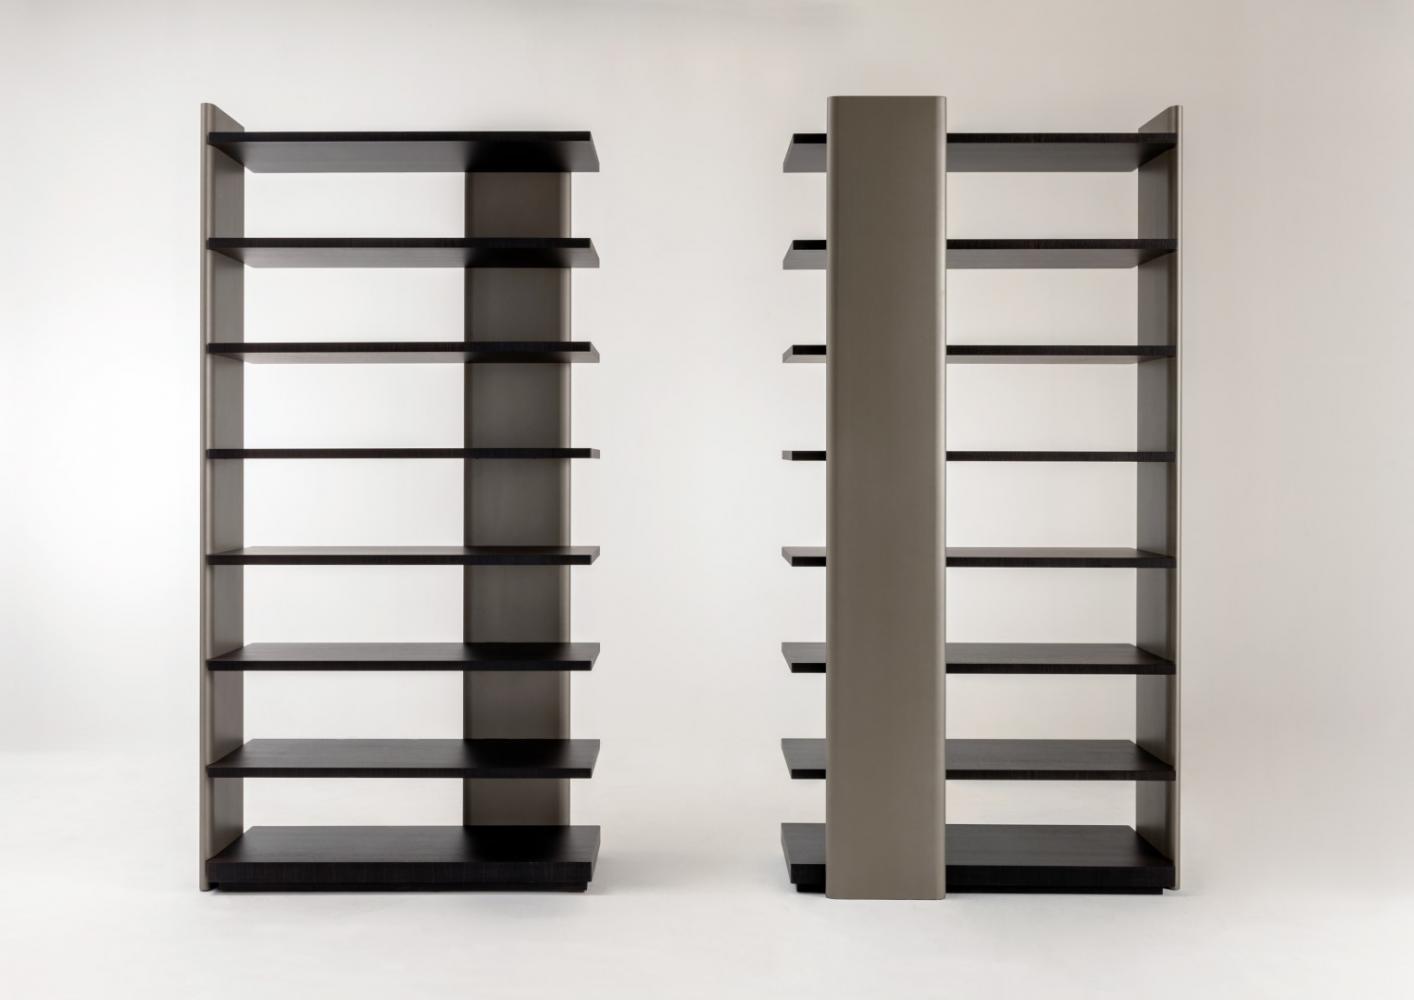 laurameroni made to measure modular bookshelf in luxury materials